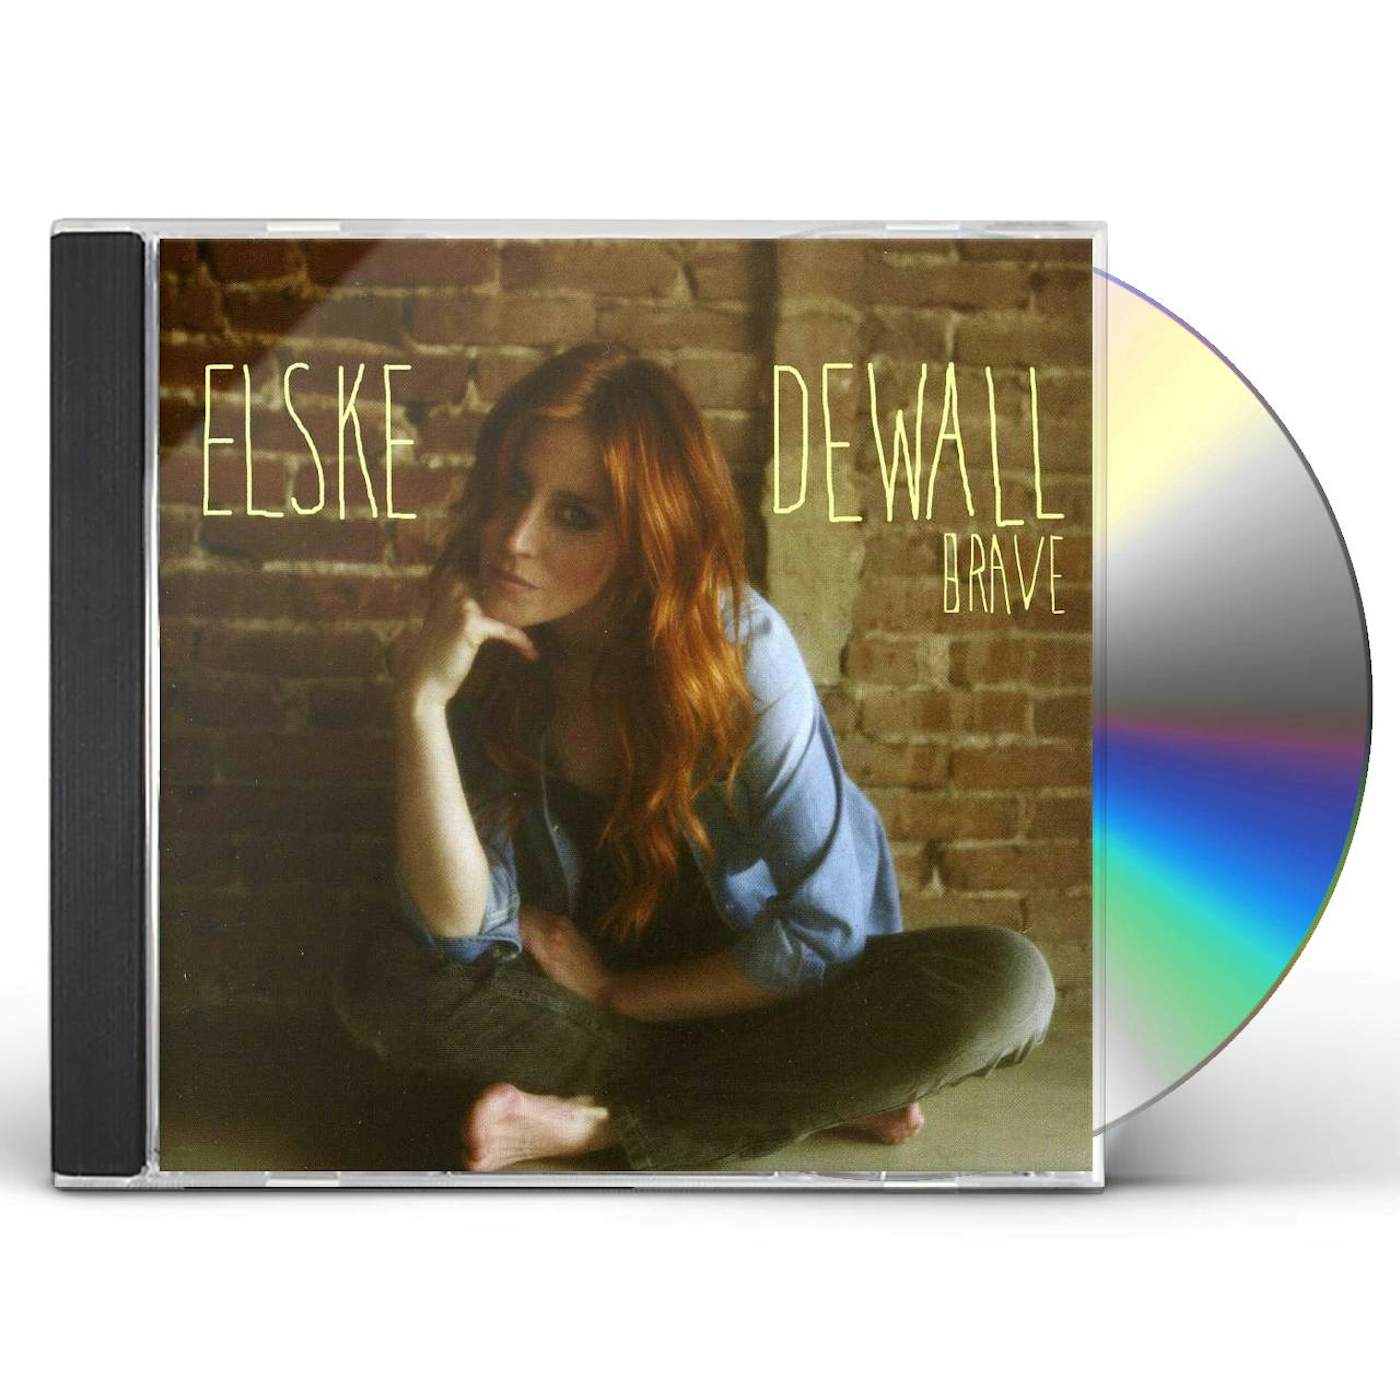 Elske DeWall BRAVE CD